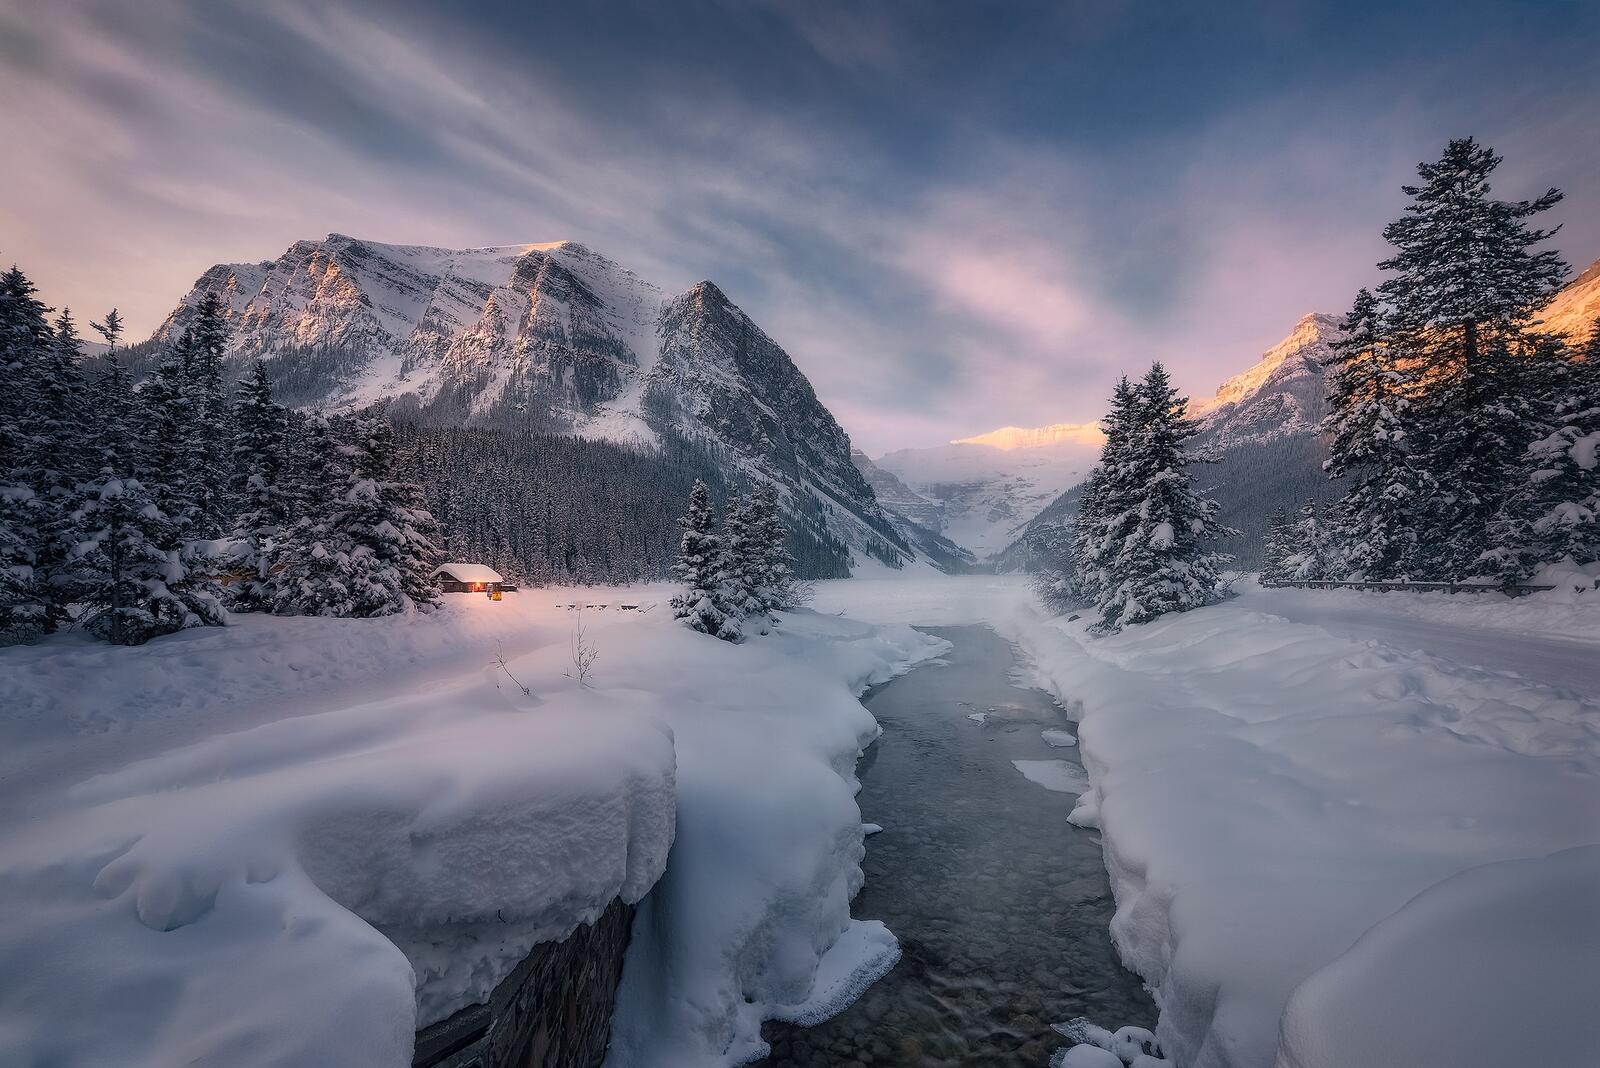 Обои Канадские Скалистые горы Национальный парк Банф зима на рабочий стол